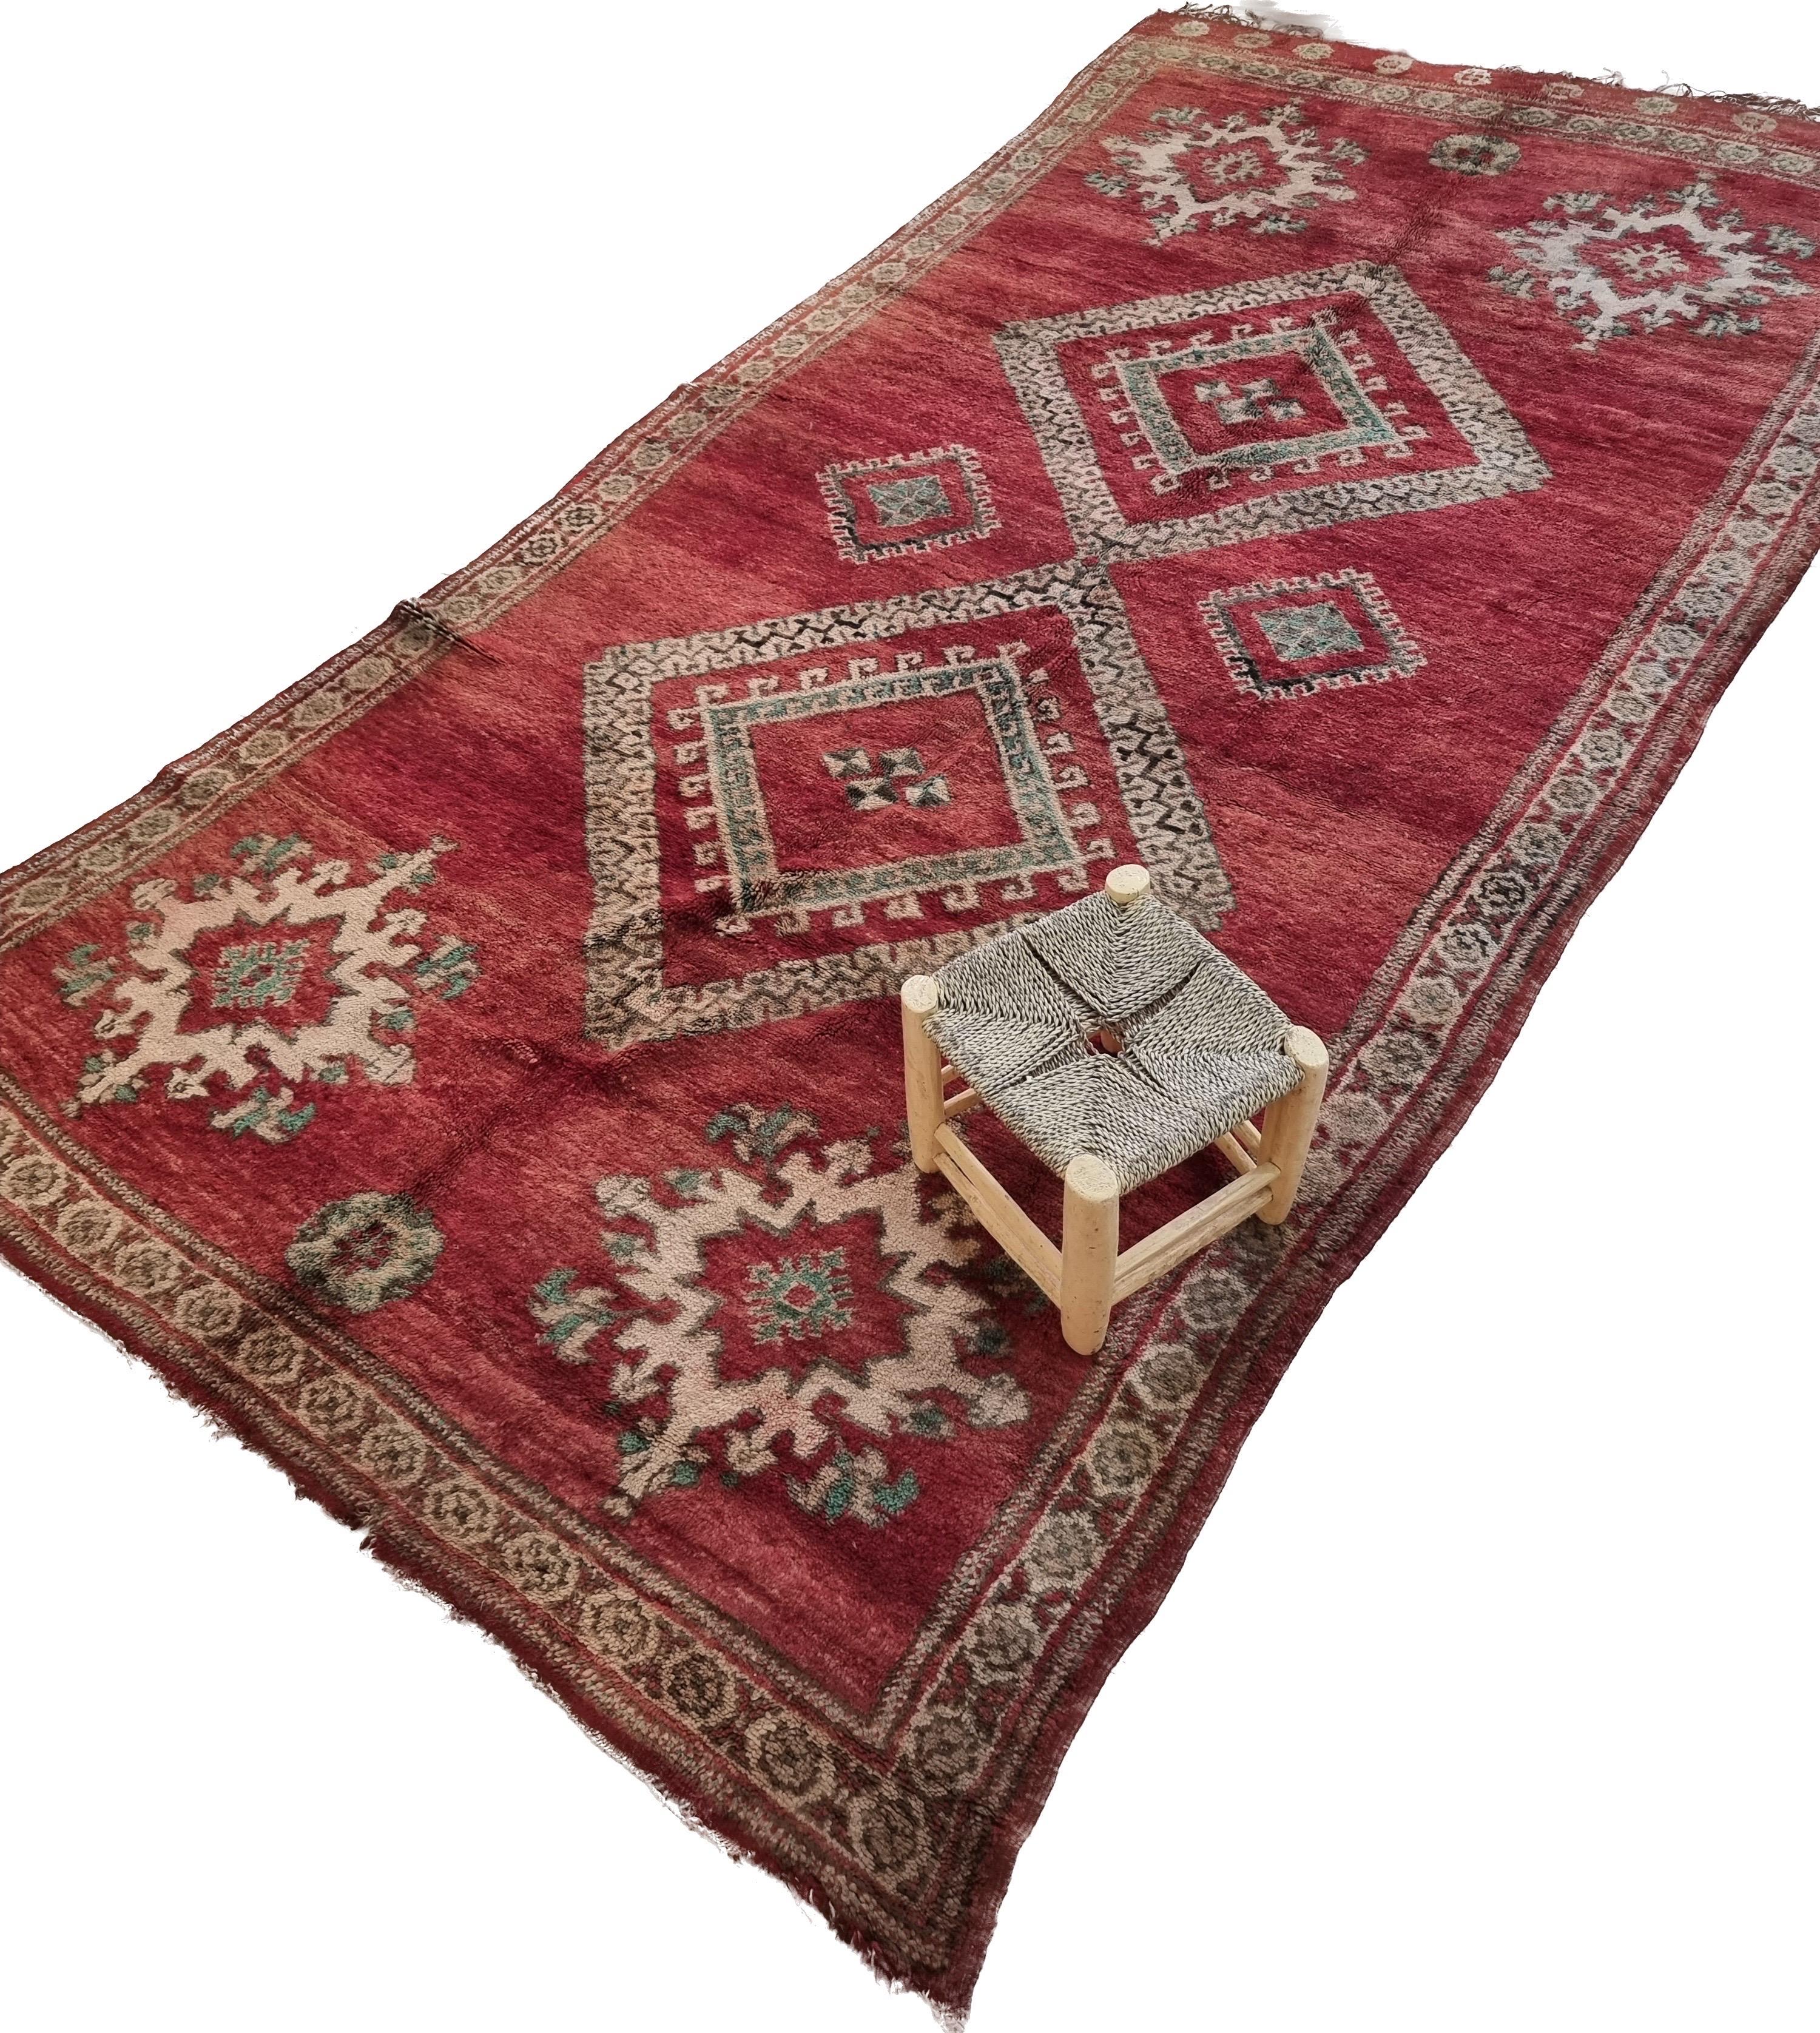 Seltener marokkanischer Vintage-Teppich.
Jeder Teppich hat seine eigene Identität. Ein einzigartiger Teppich mit einer schönen Hintergrundgeschichte steht für ein Leben voller historischer und bedeutungsvoller Hintergründe. Jeder einzelne unserer